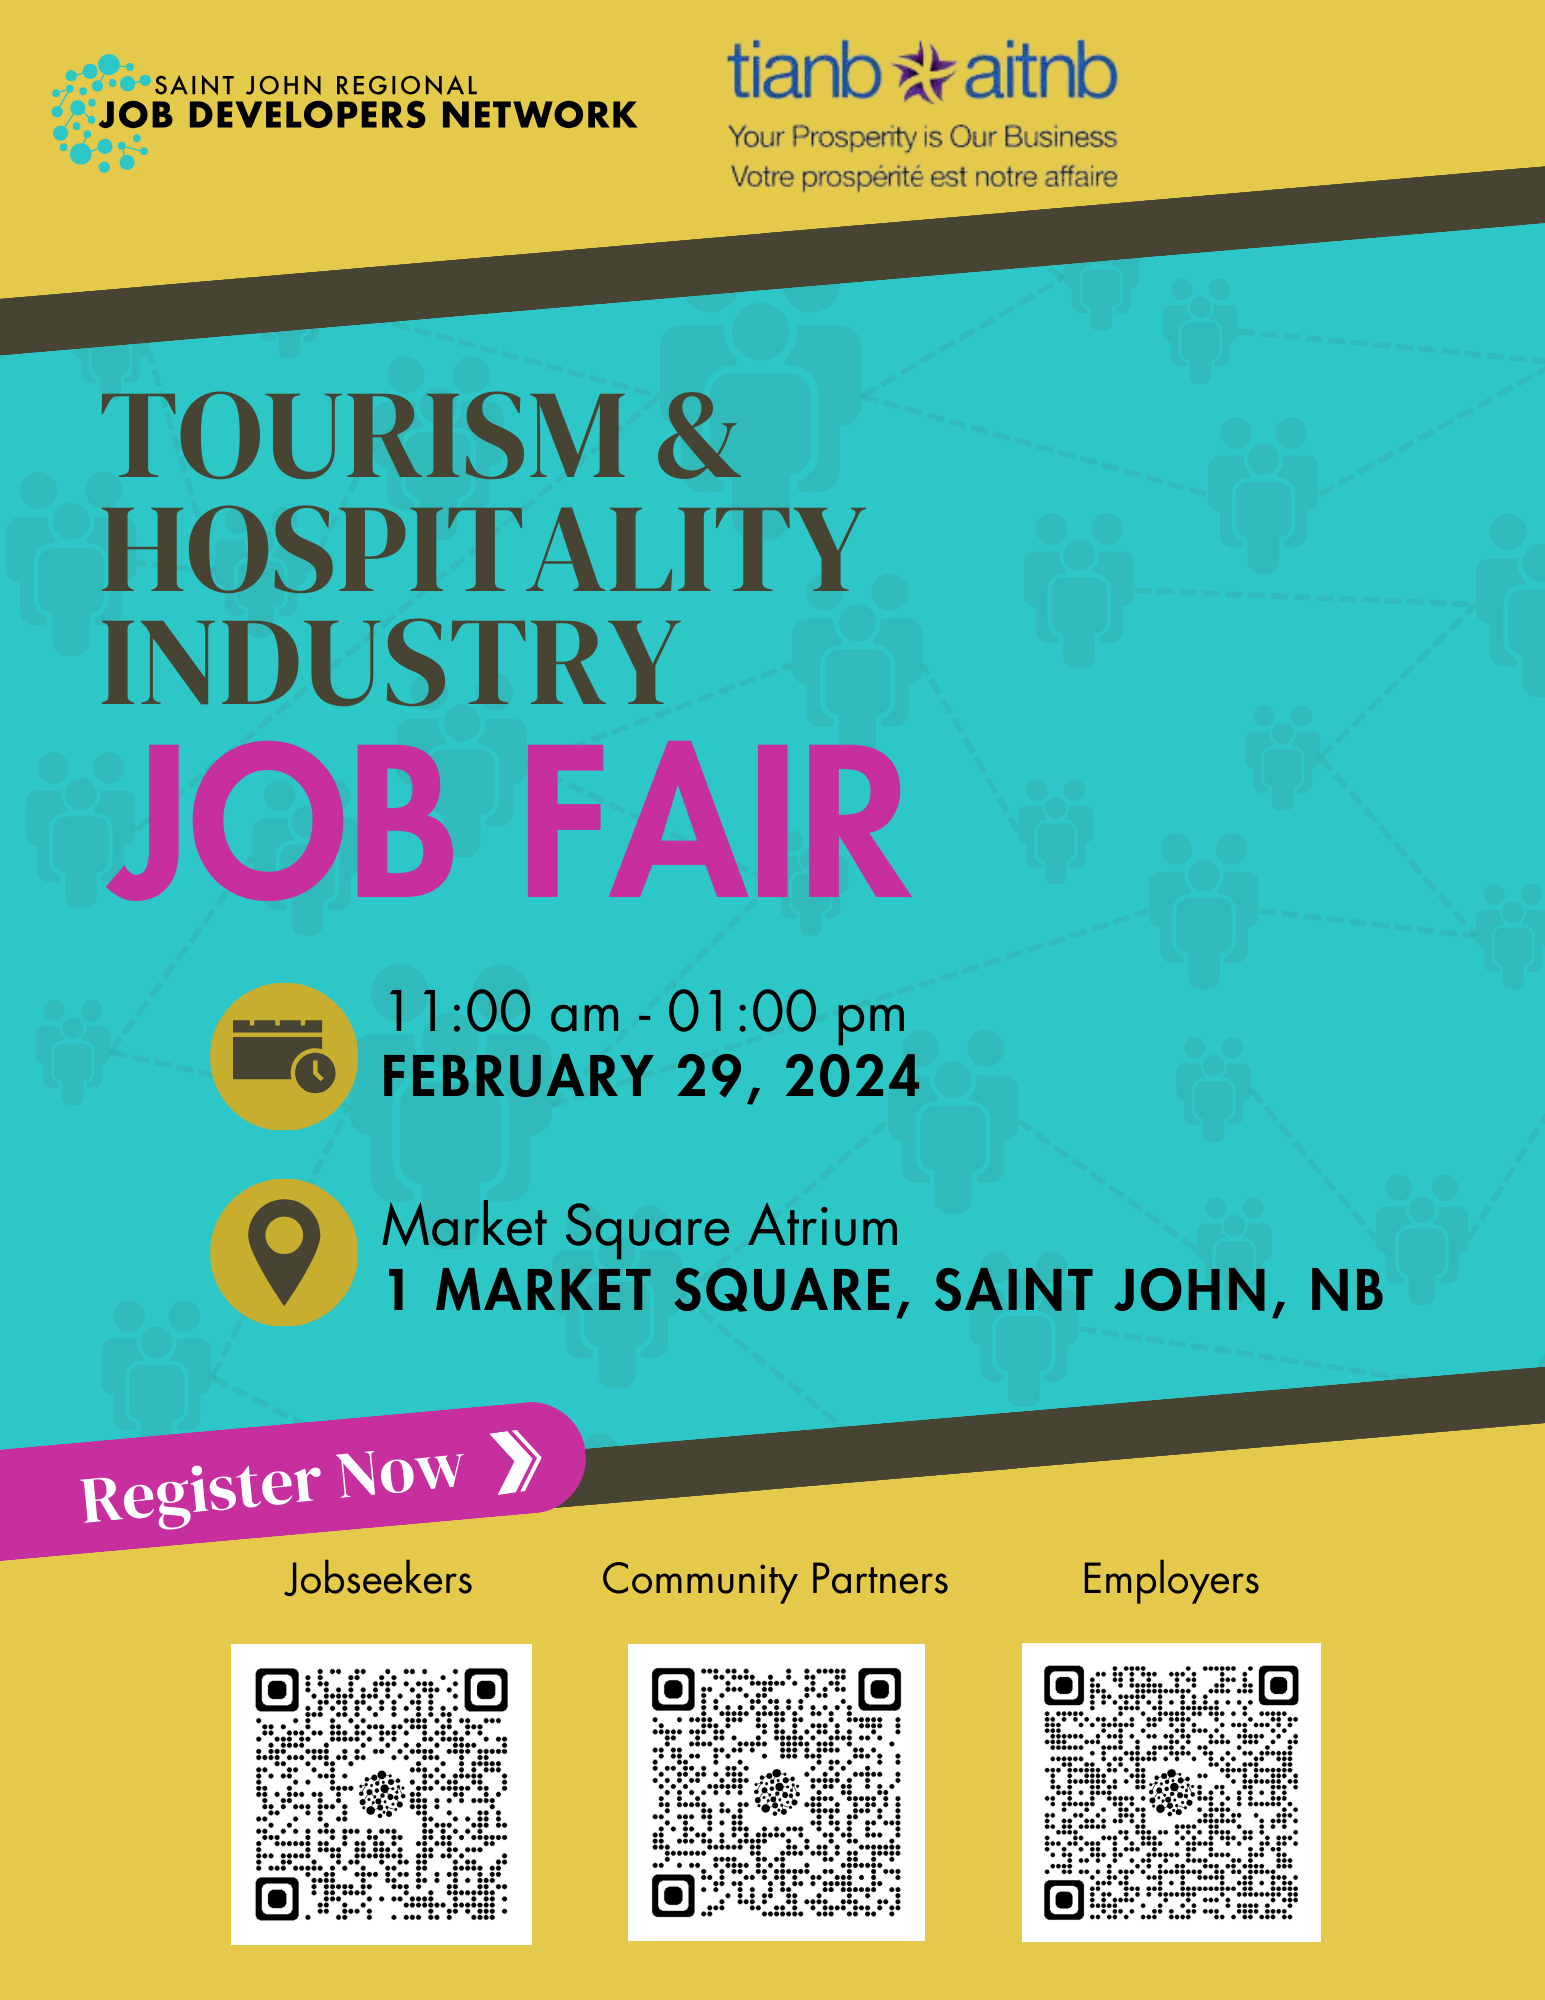 poster promoting job fair